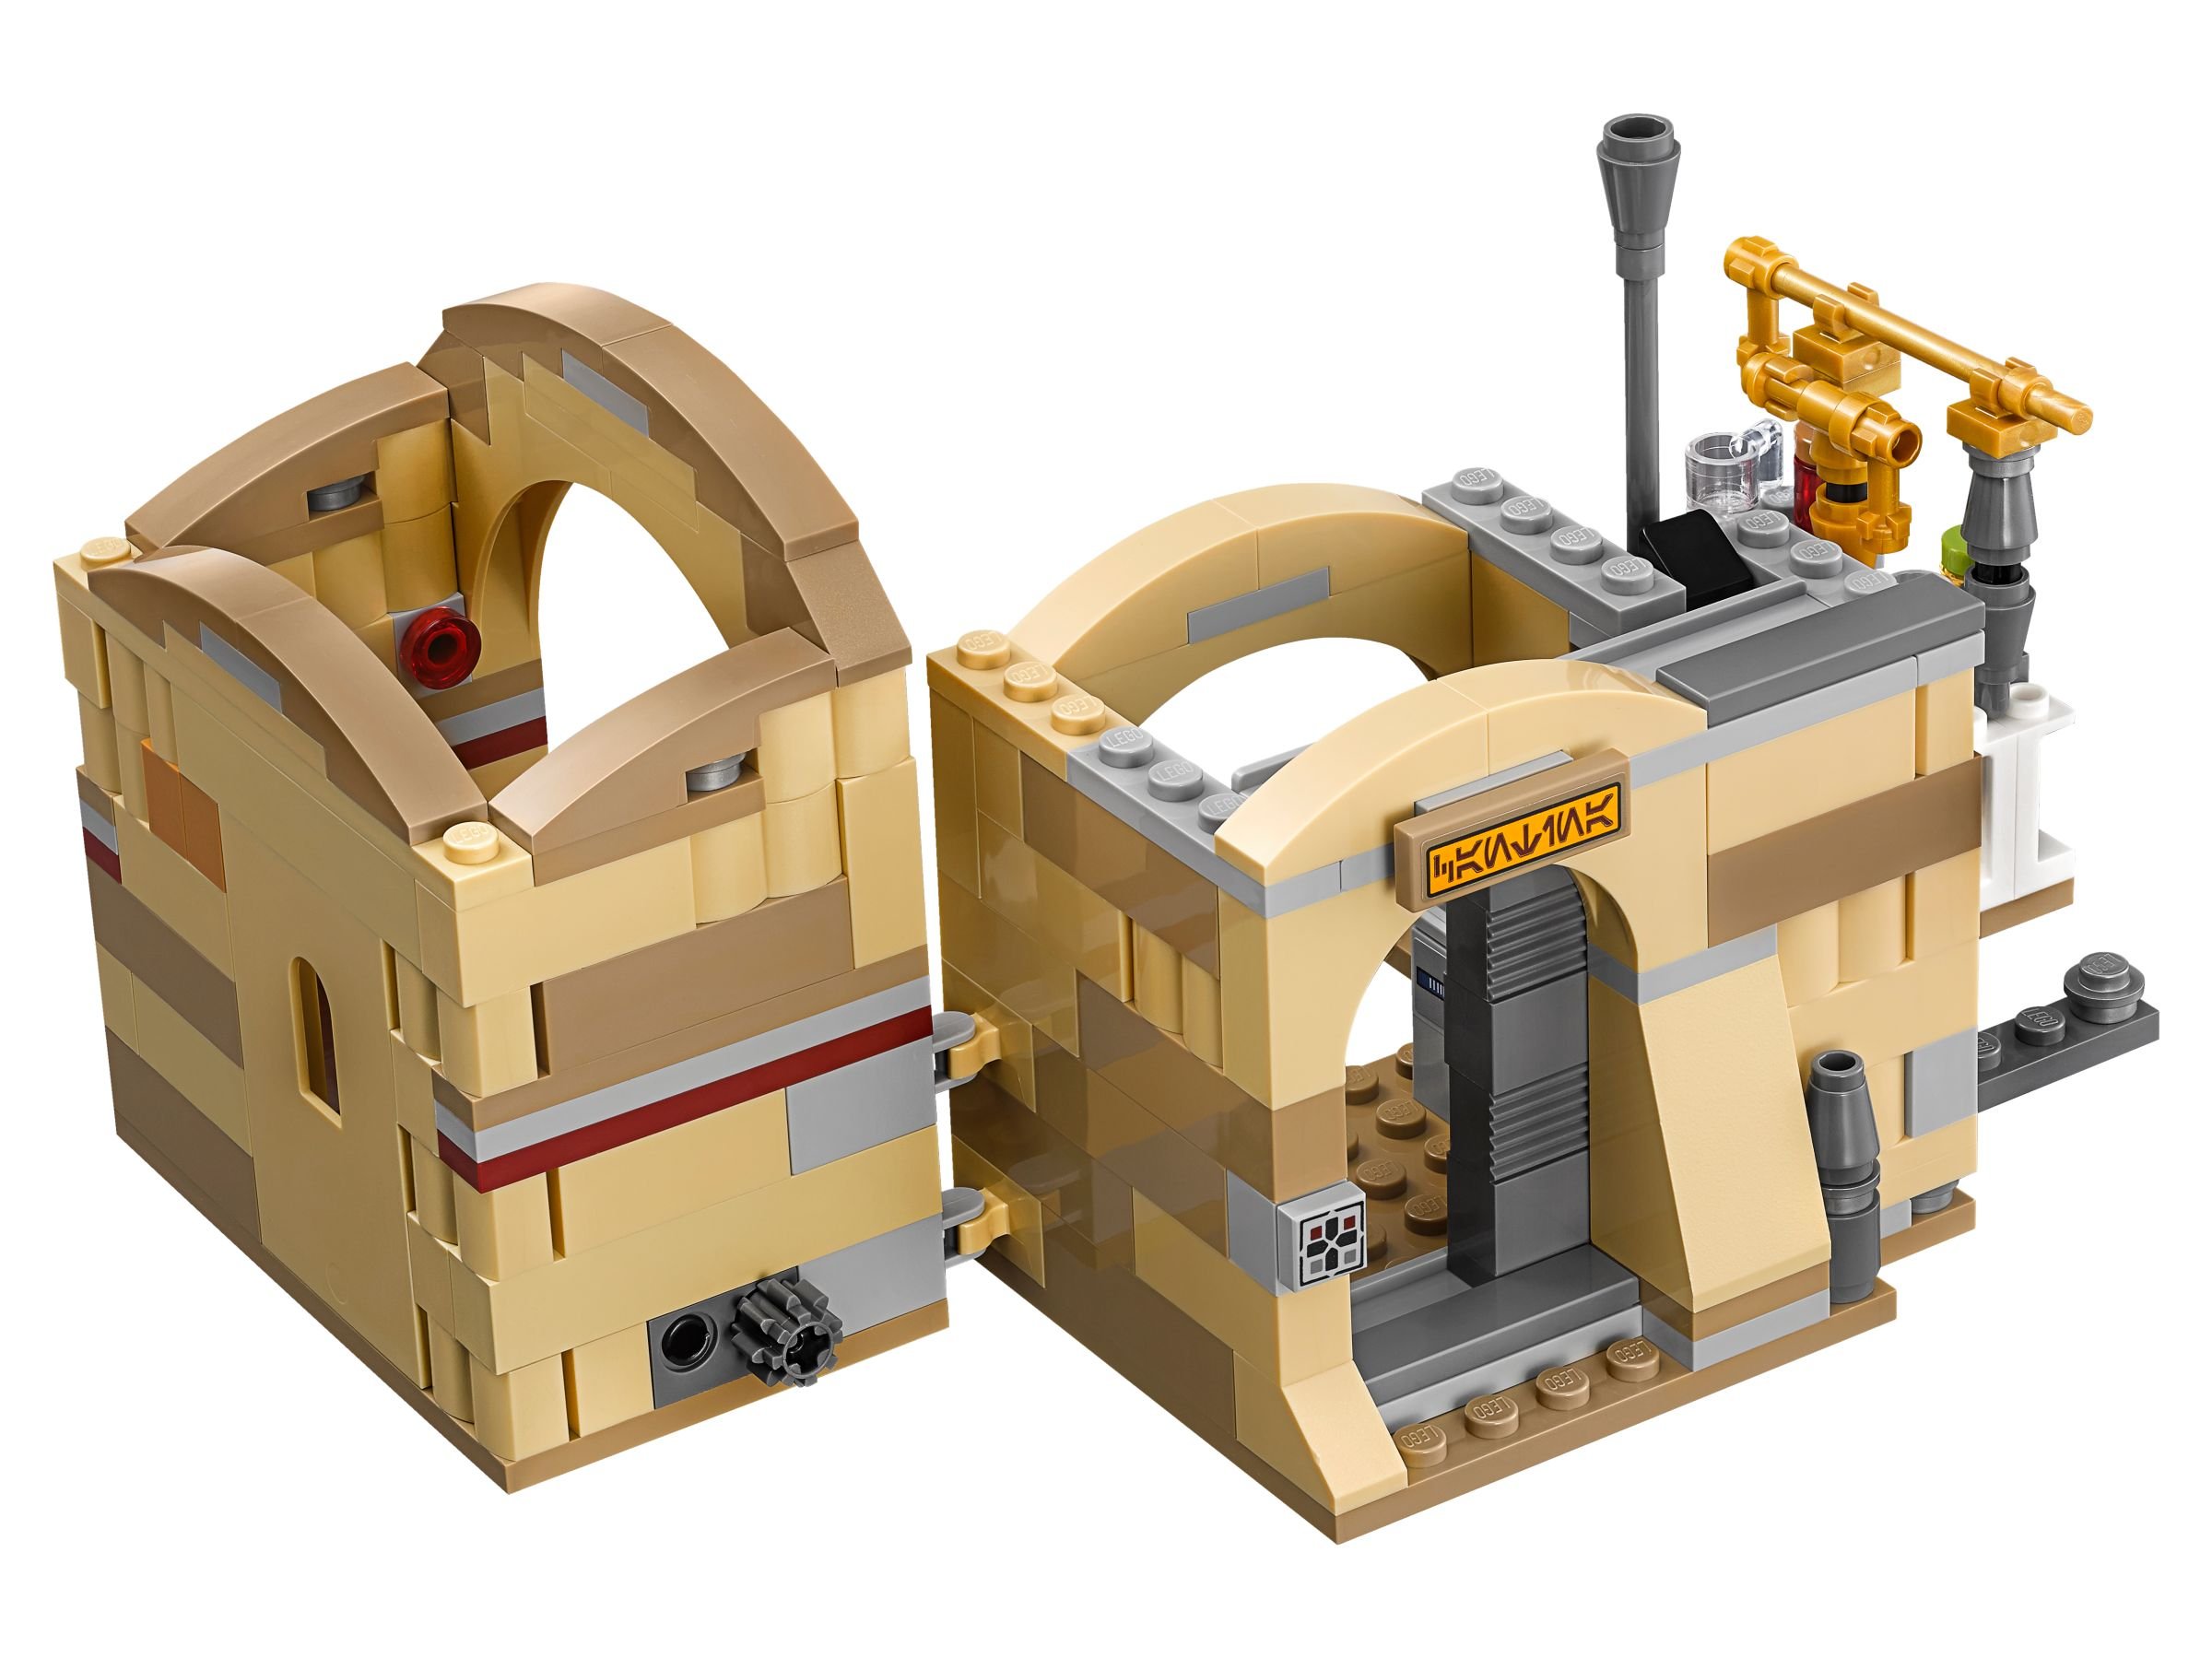 LEGO Star Wars 75205 Mos Eisley Cantina™ LEGO_75205_alt4.jpg